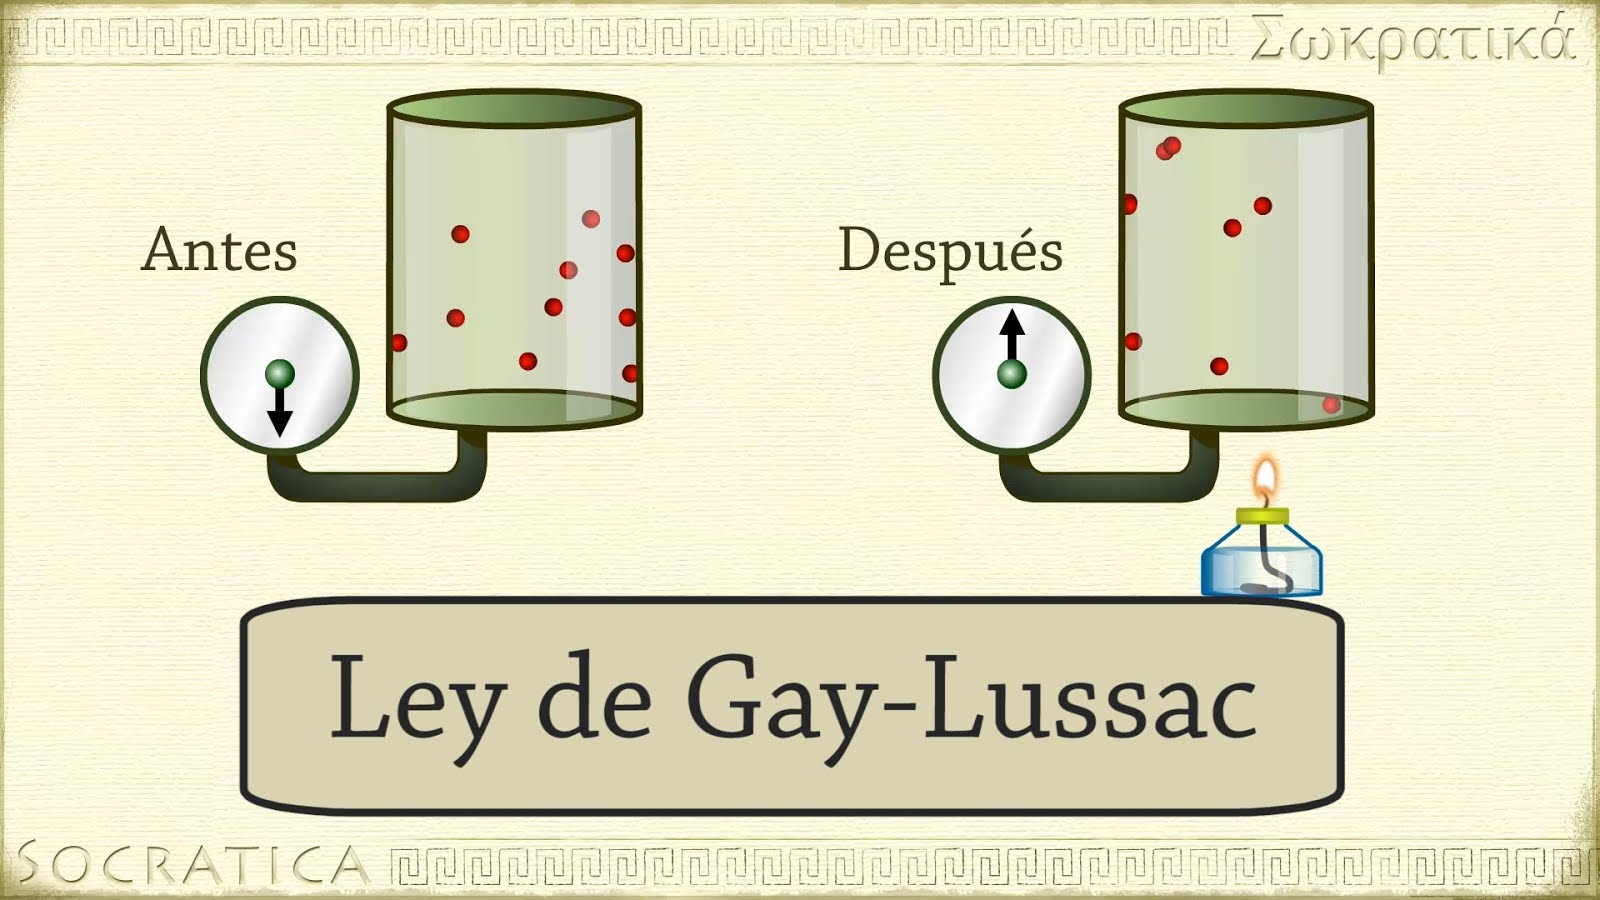 Ley de gay-lussc